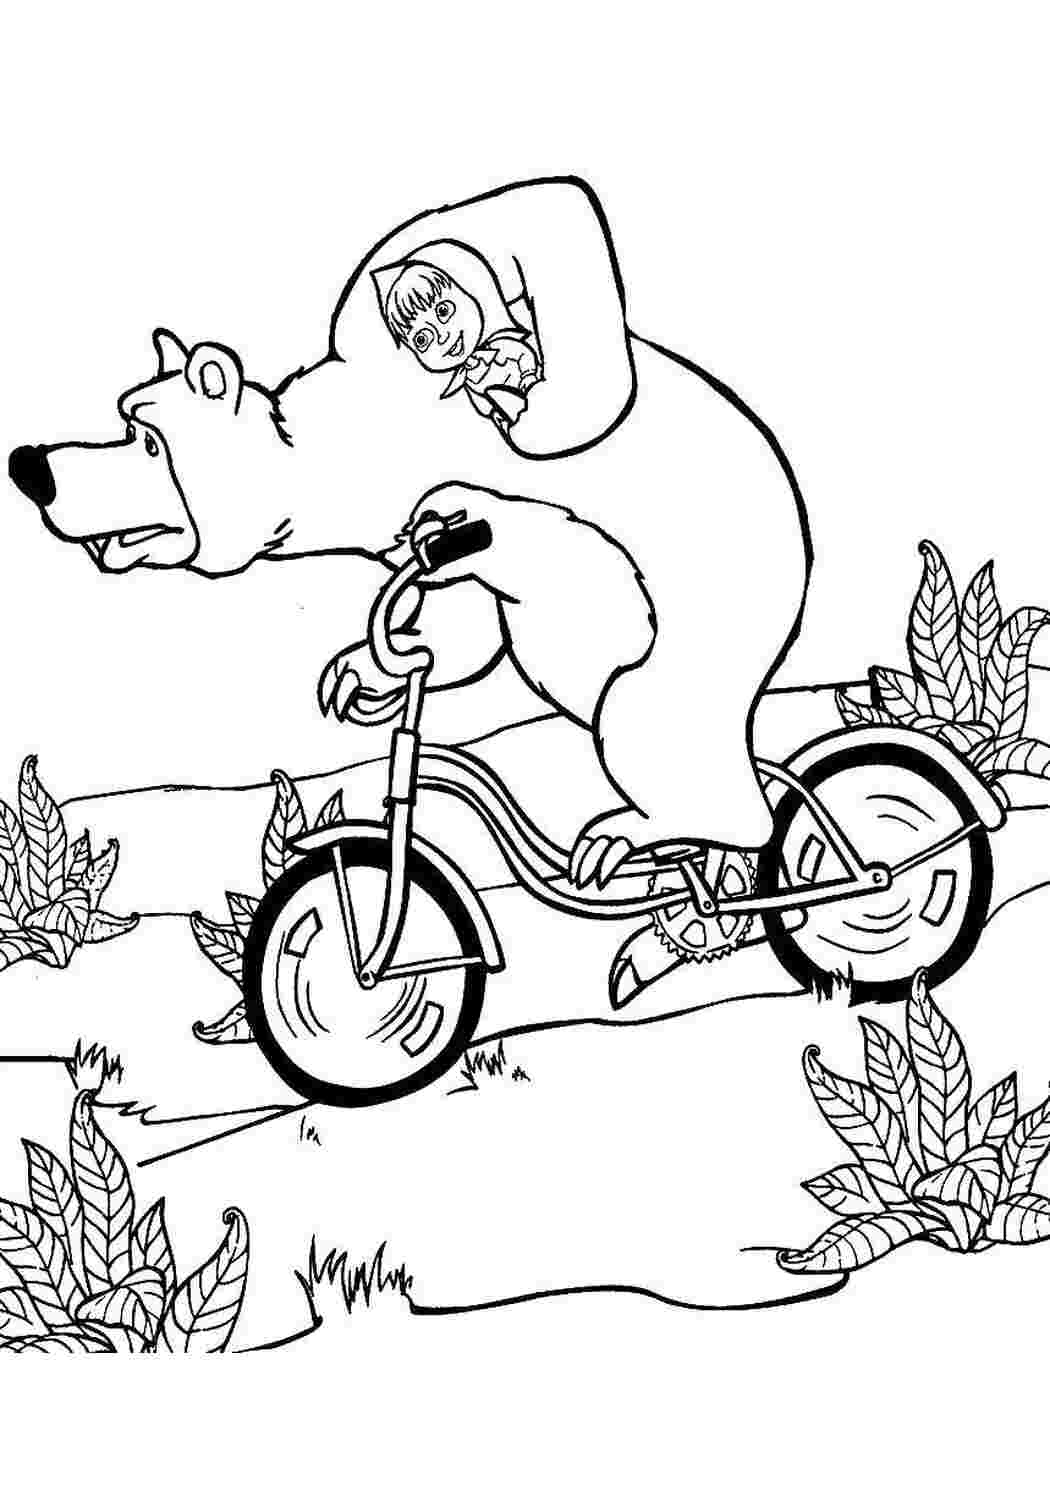 Раскраски Раскраски для детей про озорную Машу из мультфильма Маша и медведь  Миша  везет машу  на велосипеде